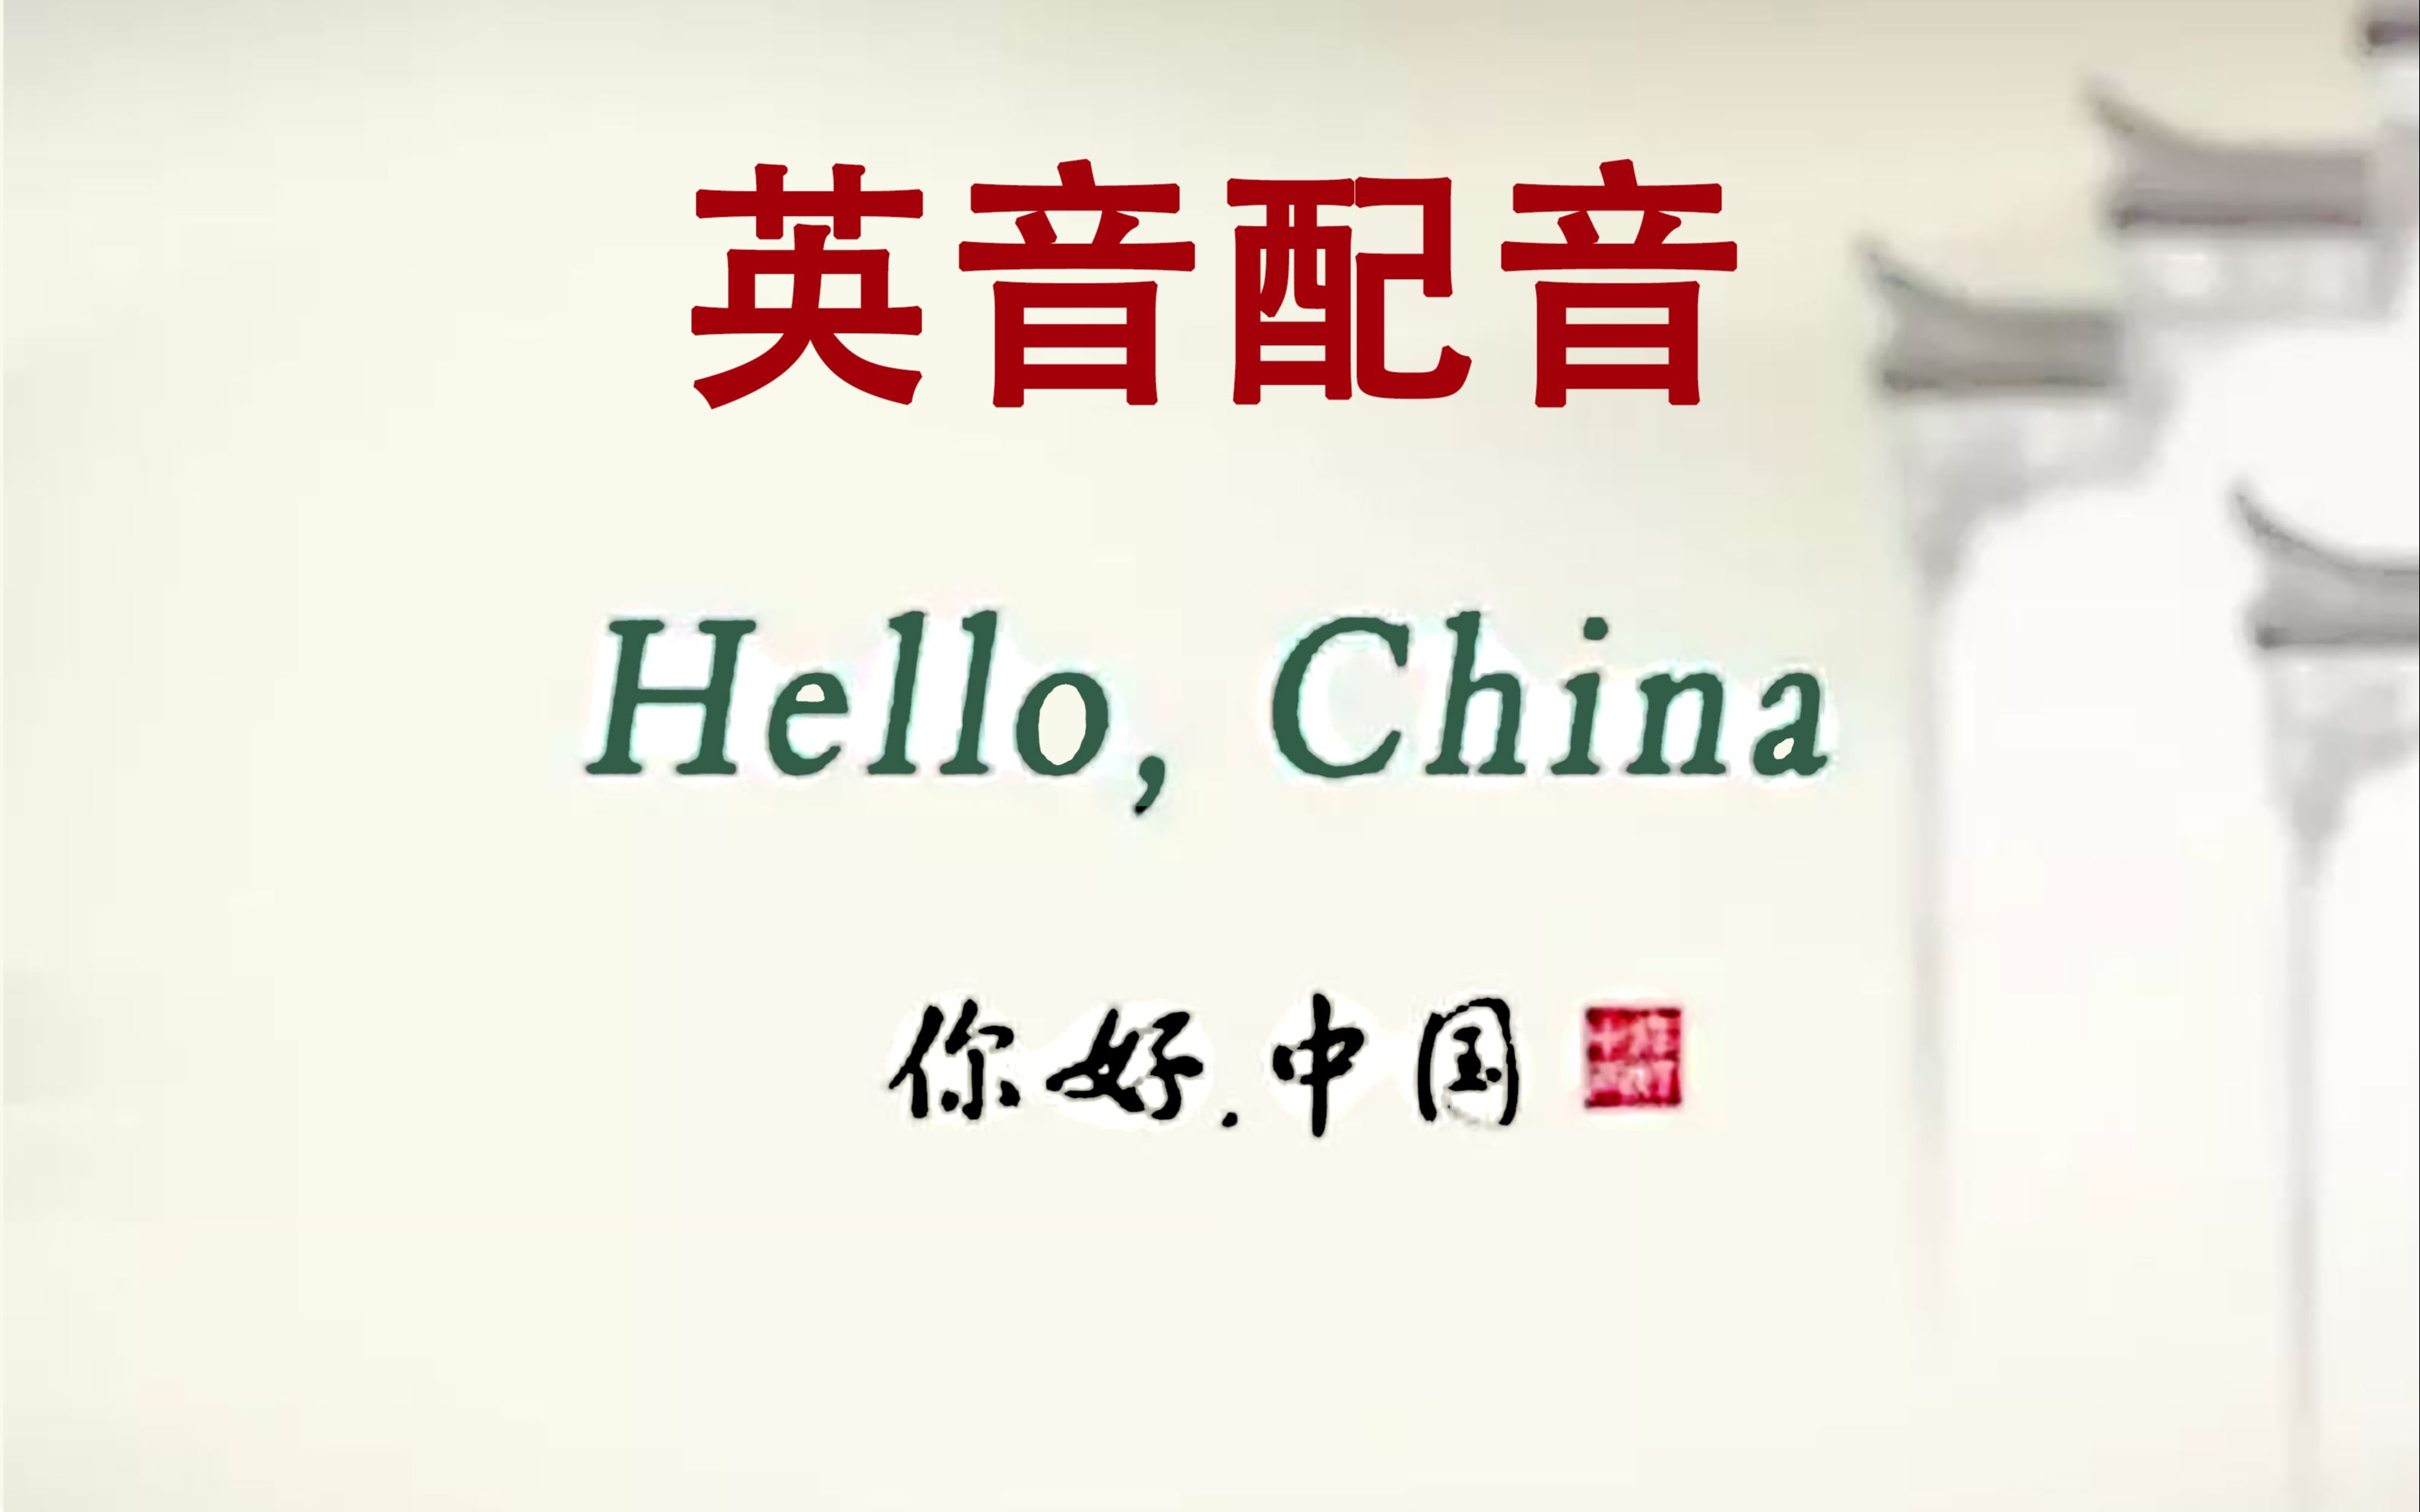 [图]【壁画】Hello China《你好中国》英音配音